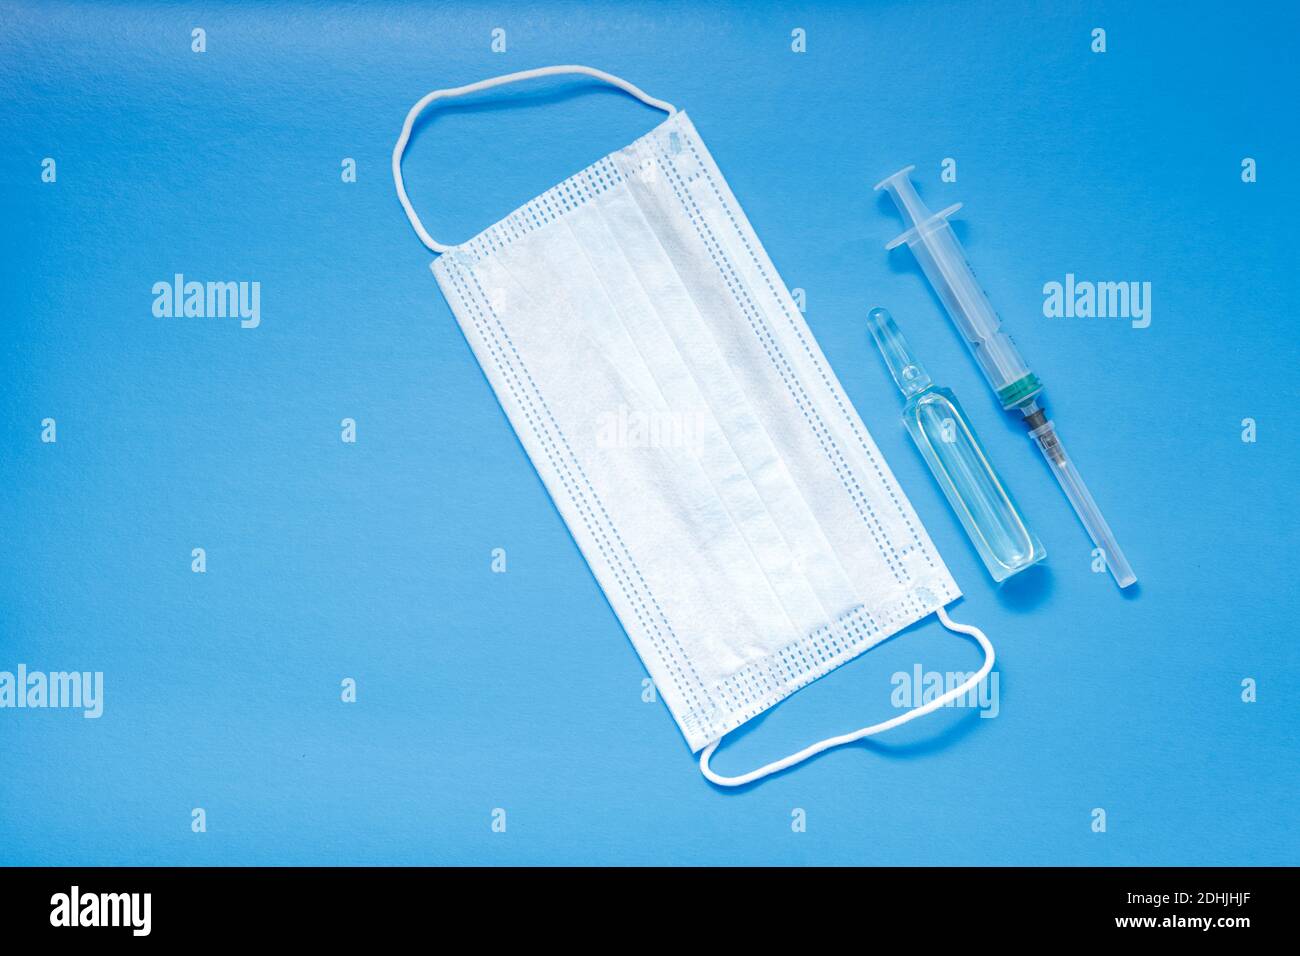 Eine Ampulle mit einem Impfstoff, eine medizinische Maske und eine Spritze liegen auf blauem Hintergrund. Das Konzept der Impfung gegen Coronavirus. Speicherplatz kopieren. Stockfoto